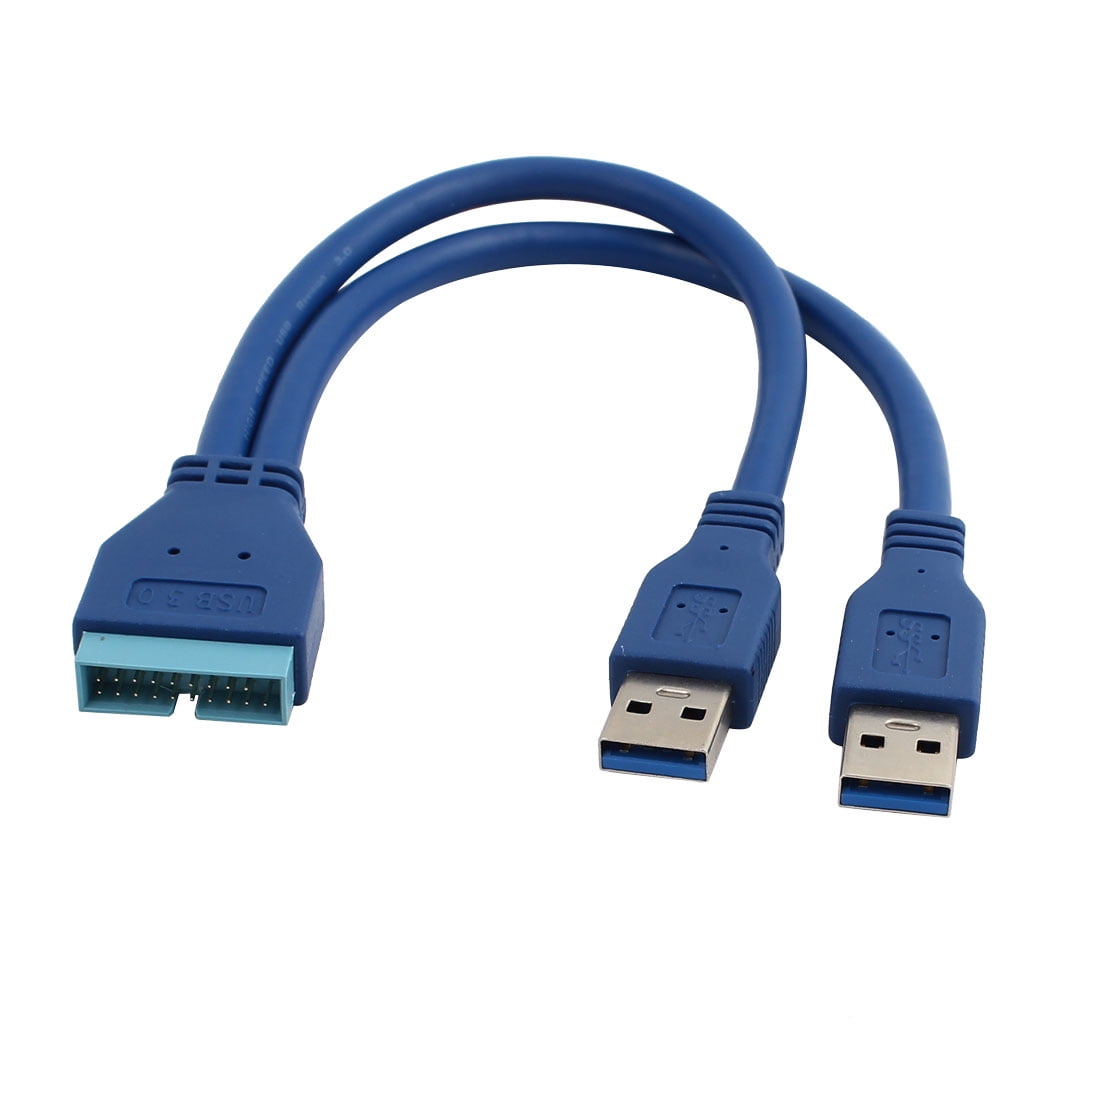 Переходник USB 3.0 19pin Type a. USB 3.0 19pin-19pin. USB 3.0 19 Pin. Переходник 19pin/Dual USB3.0. Internal usb